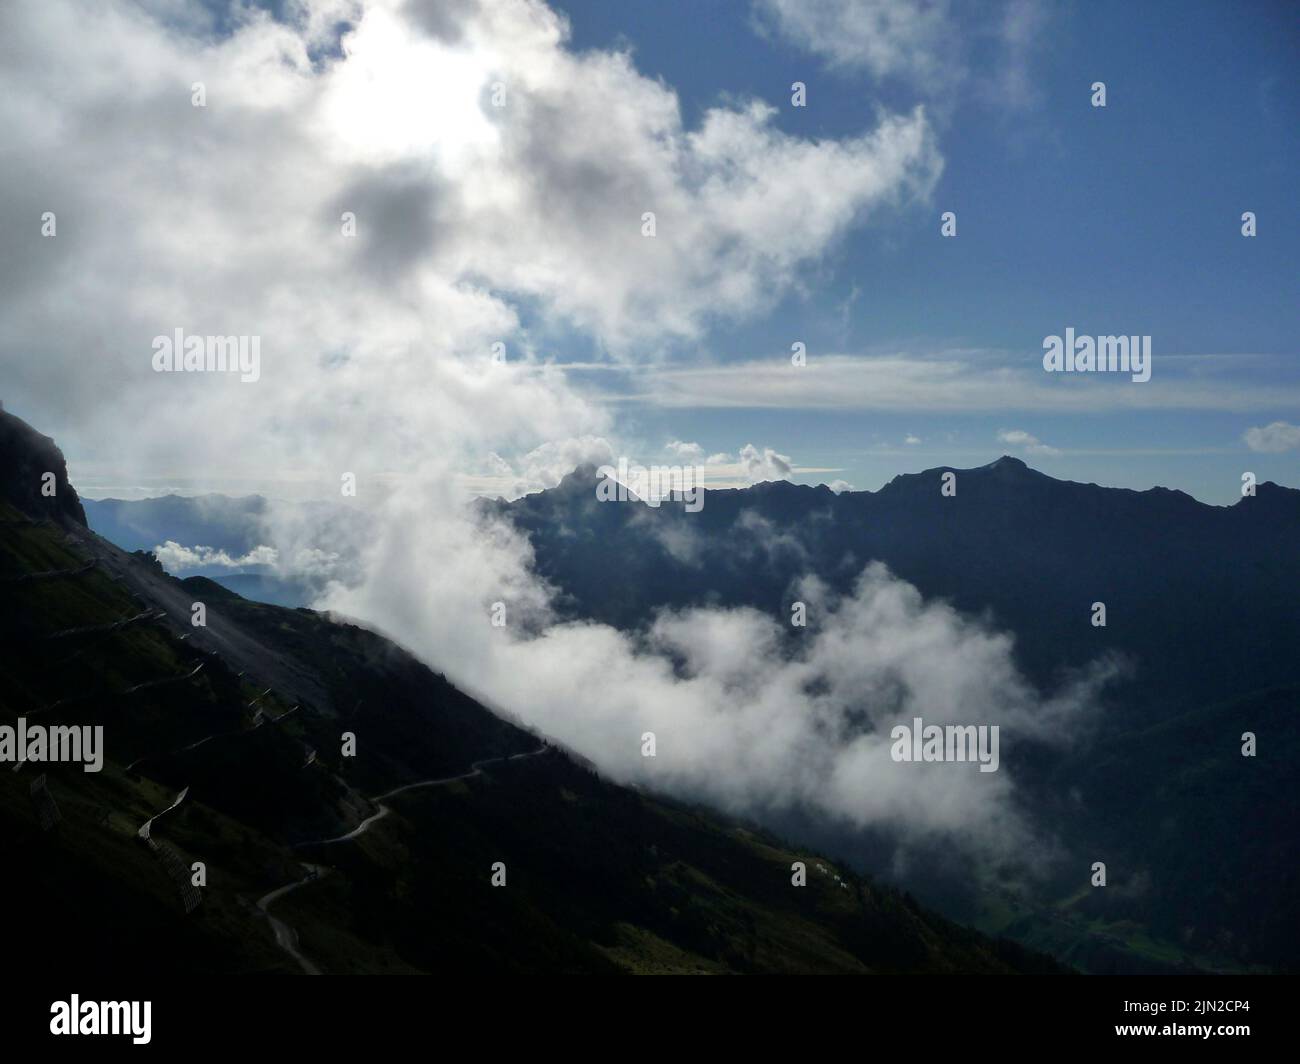 Stubai high-altitude hiking trail in Tyrol, Austria Stock Photo